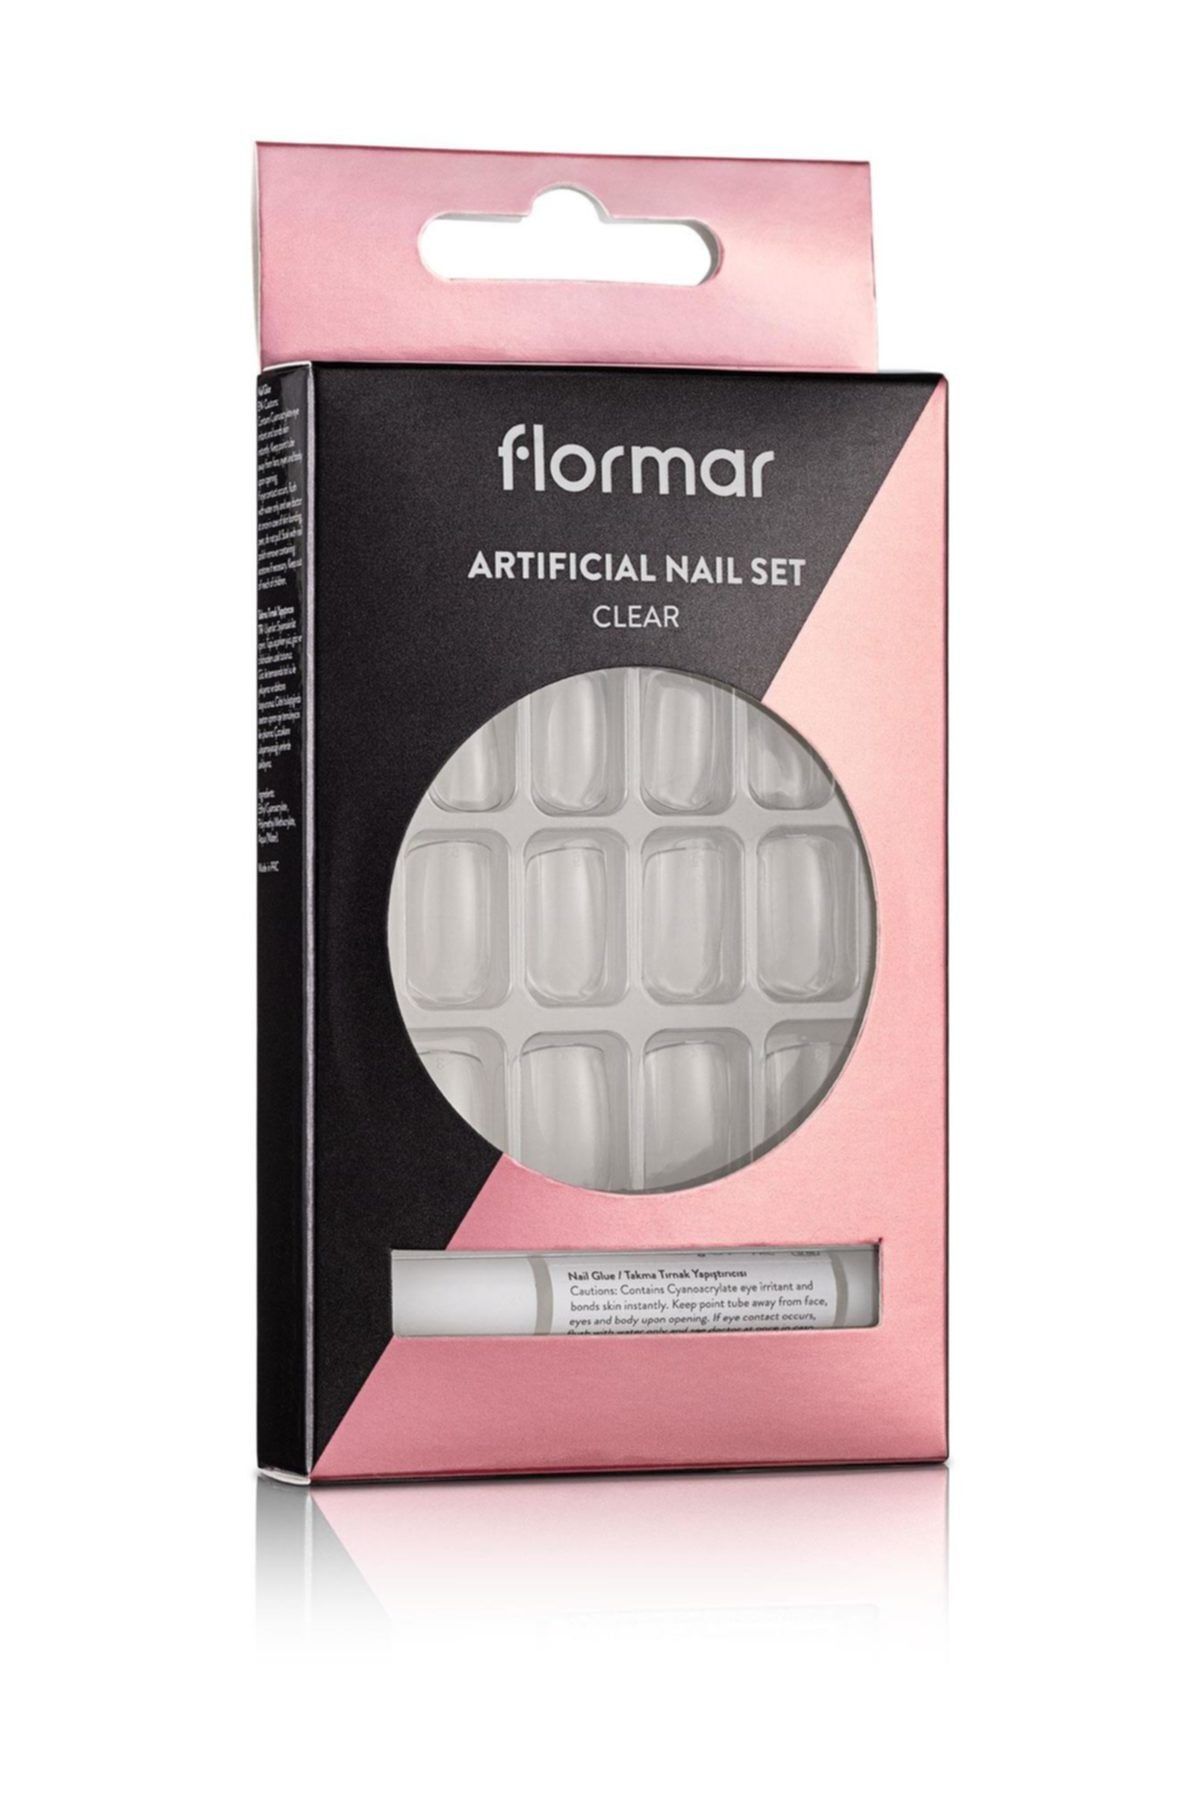 Flormar Şeffaf Takma Tırnak Seti - Artificial Nail Set Clear 053 8690604598632